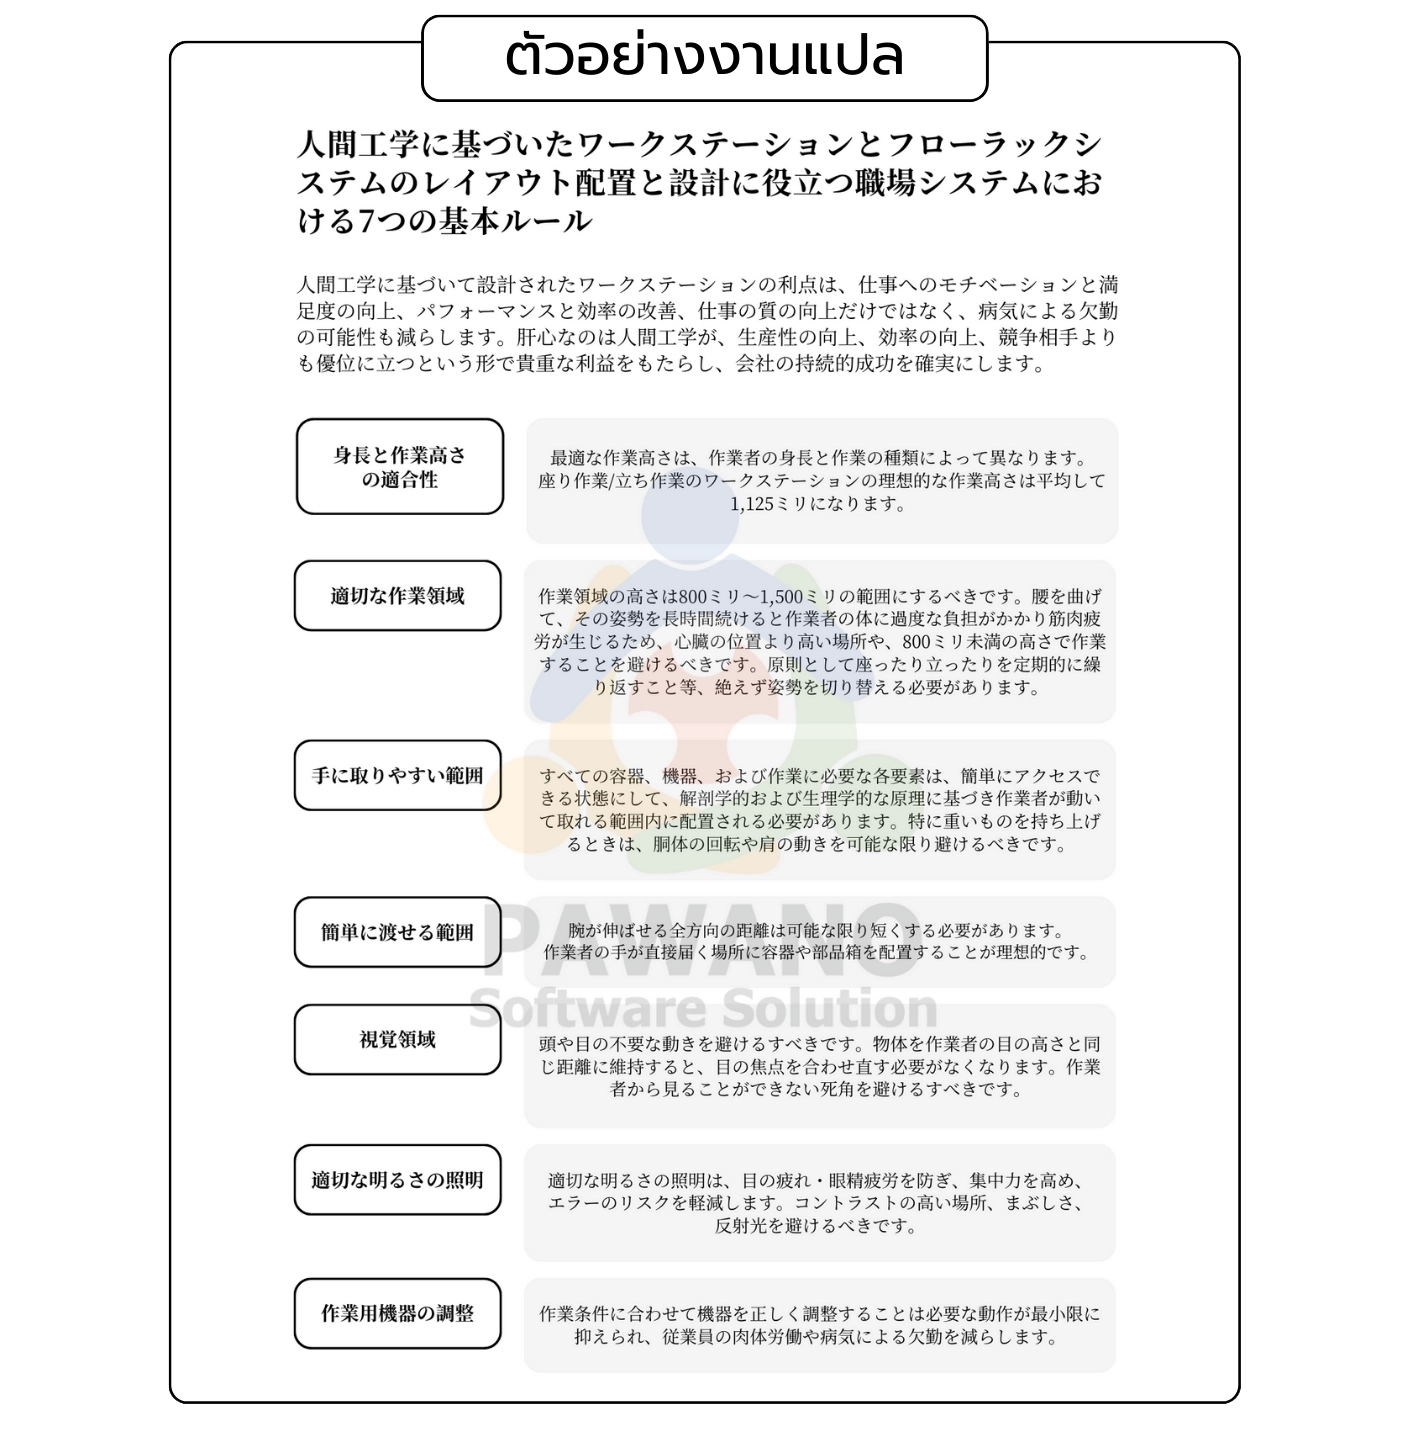 ตัวอย่างงานแปลคู่มือ ภาษาญี่ปุ่น